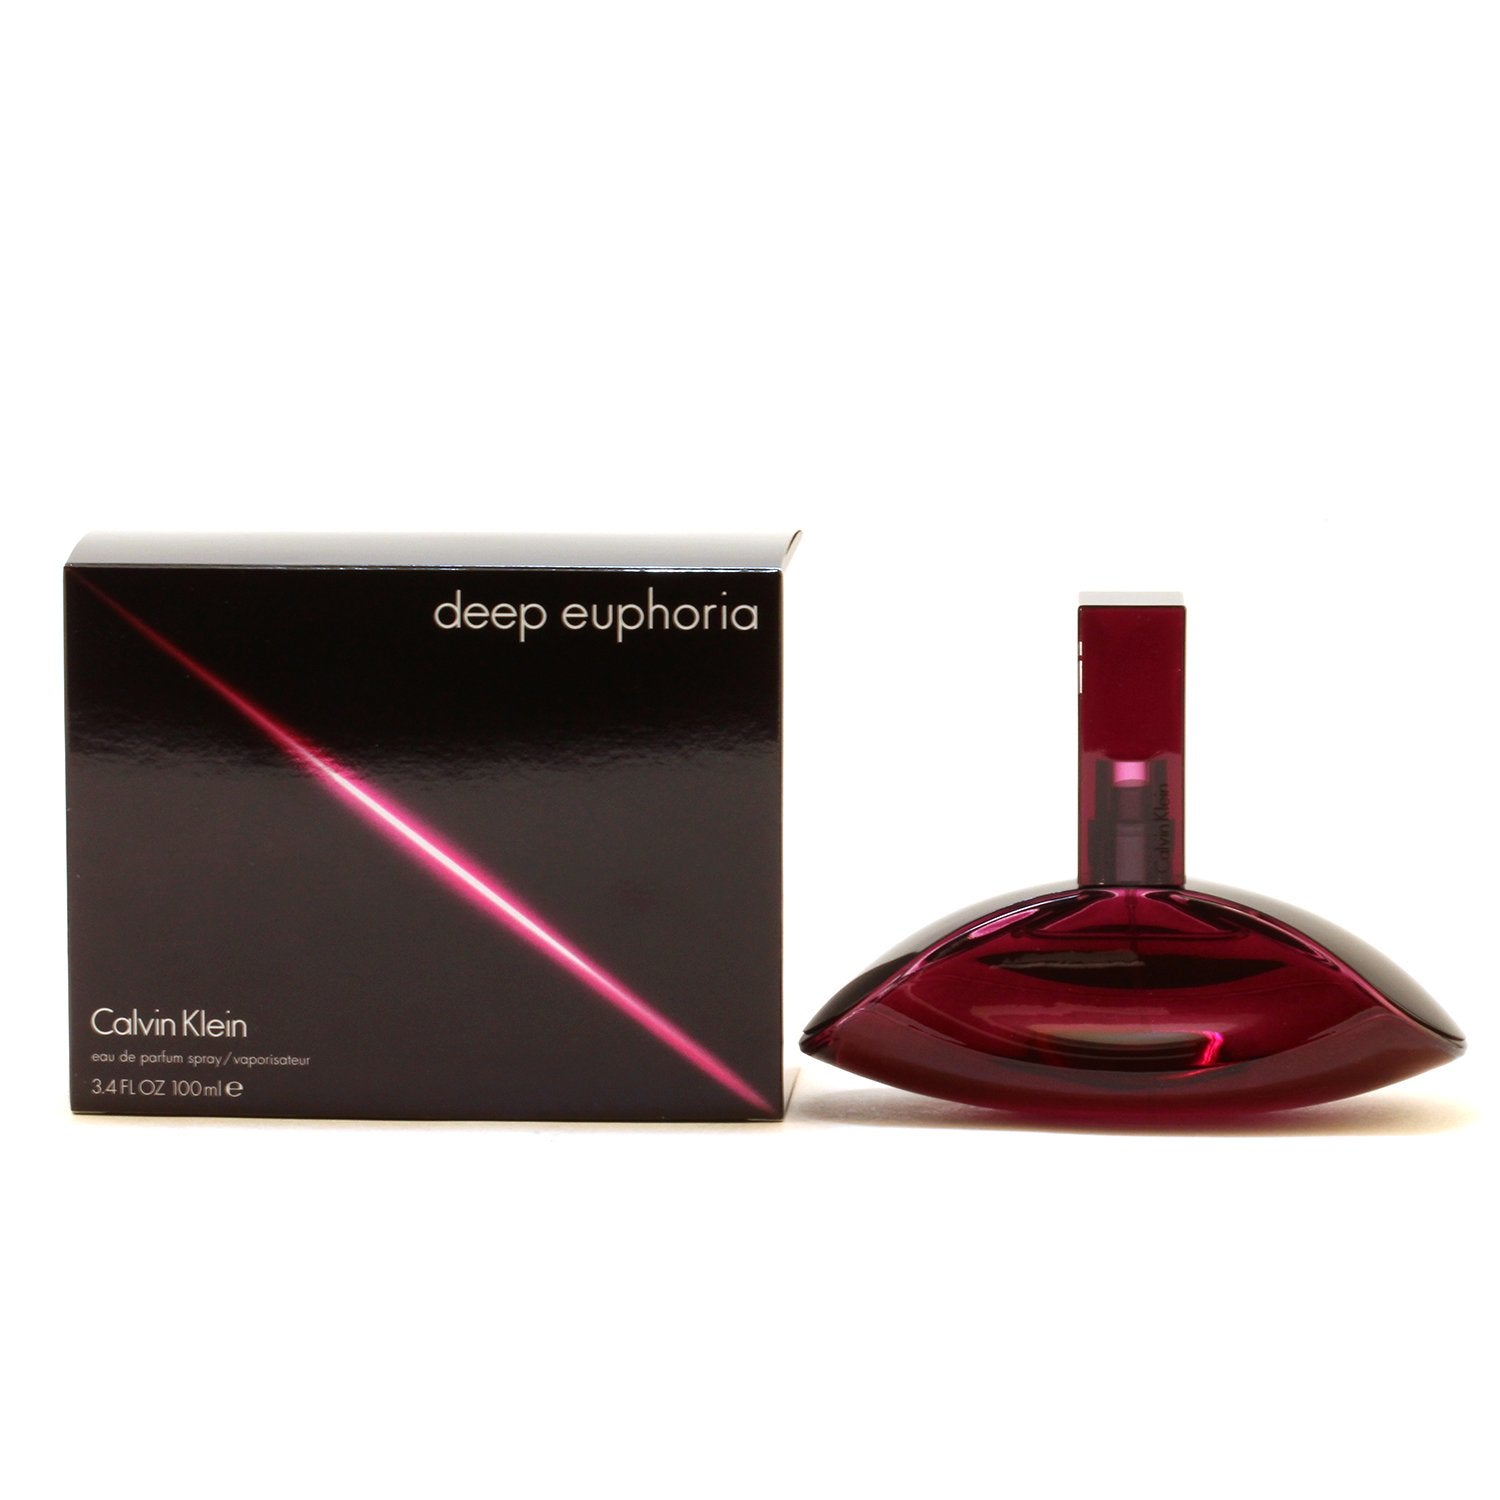 Perfume - DEEP EUPHORIA FOR WOMEN BY CALVIN KLEIN- EAU DE PARFUM SPRAY, 3.4 OZ